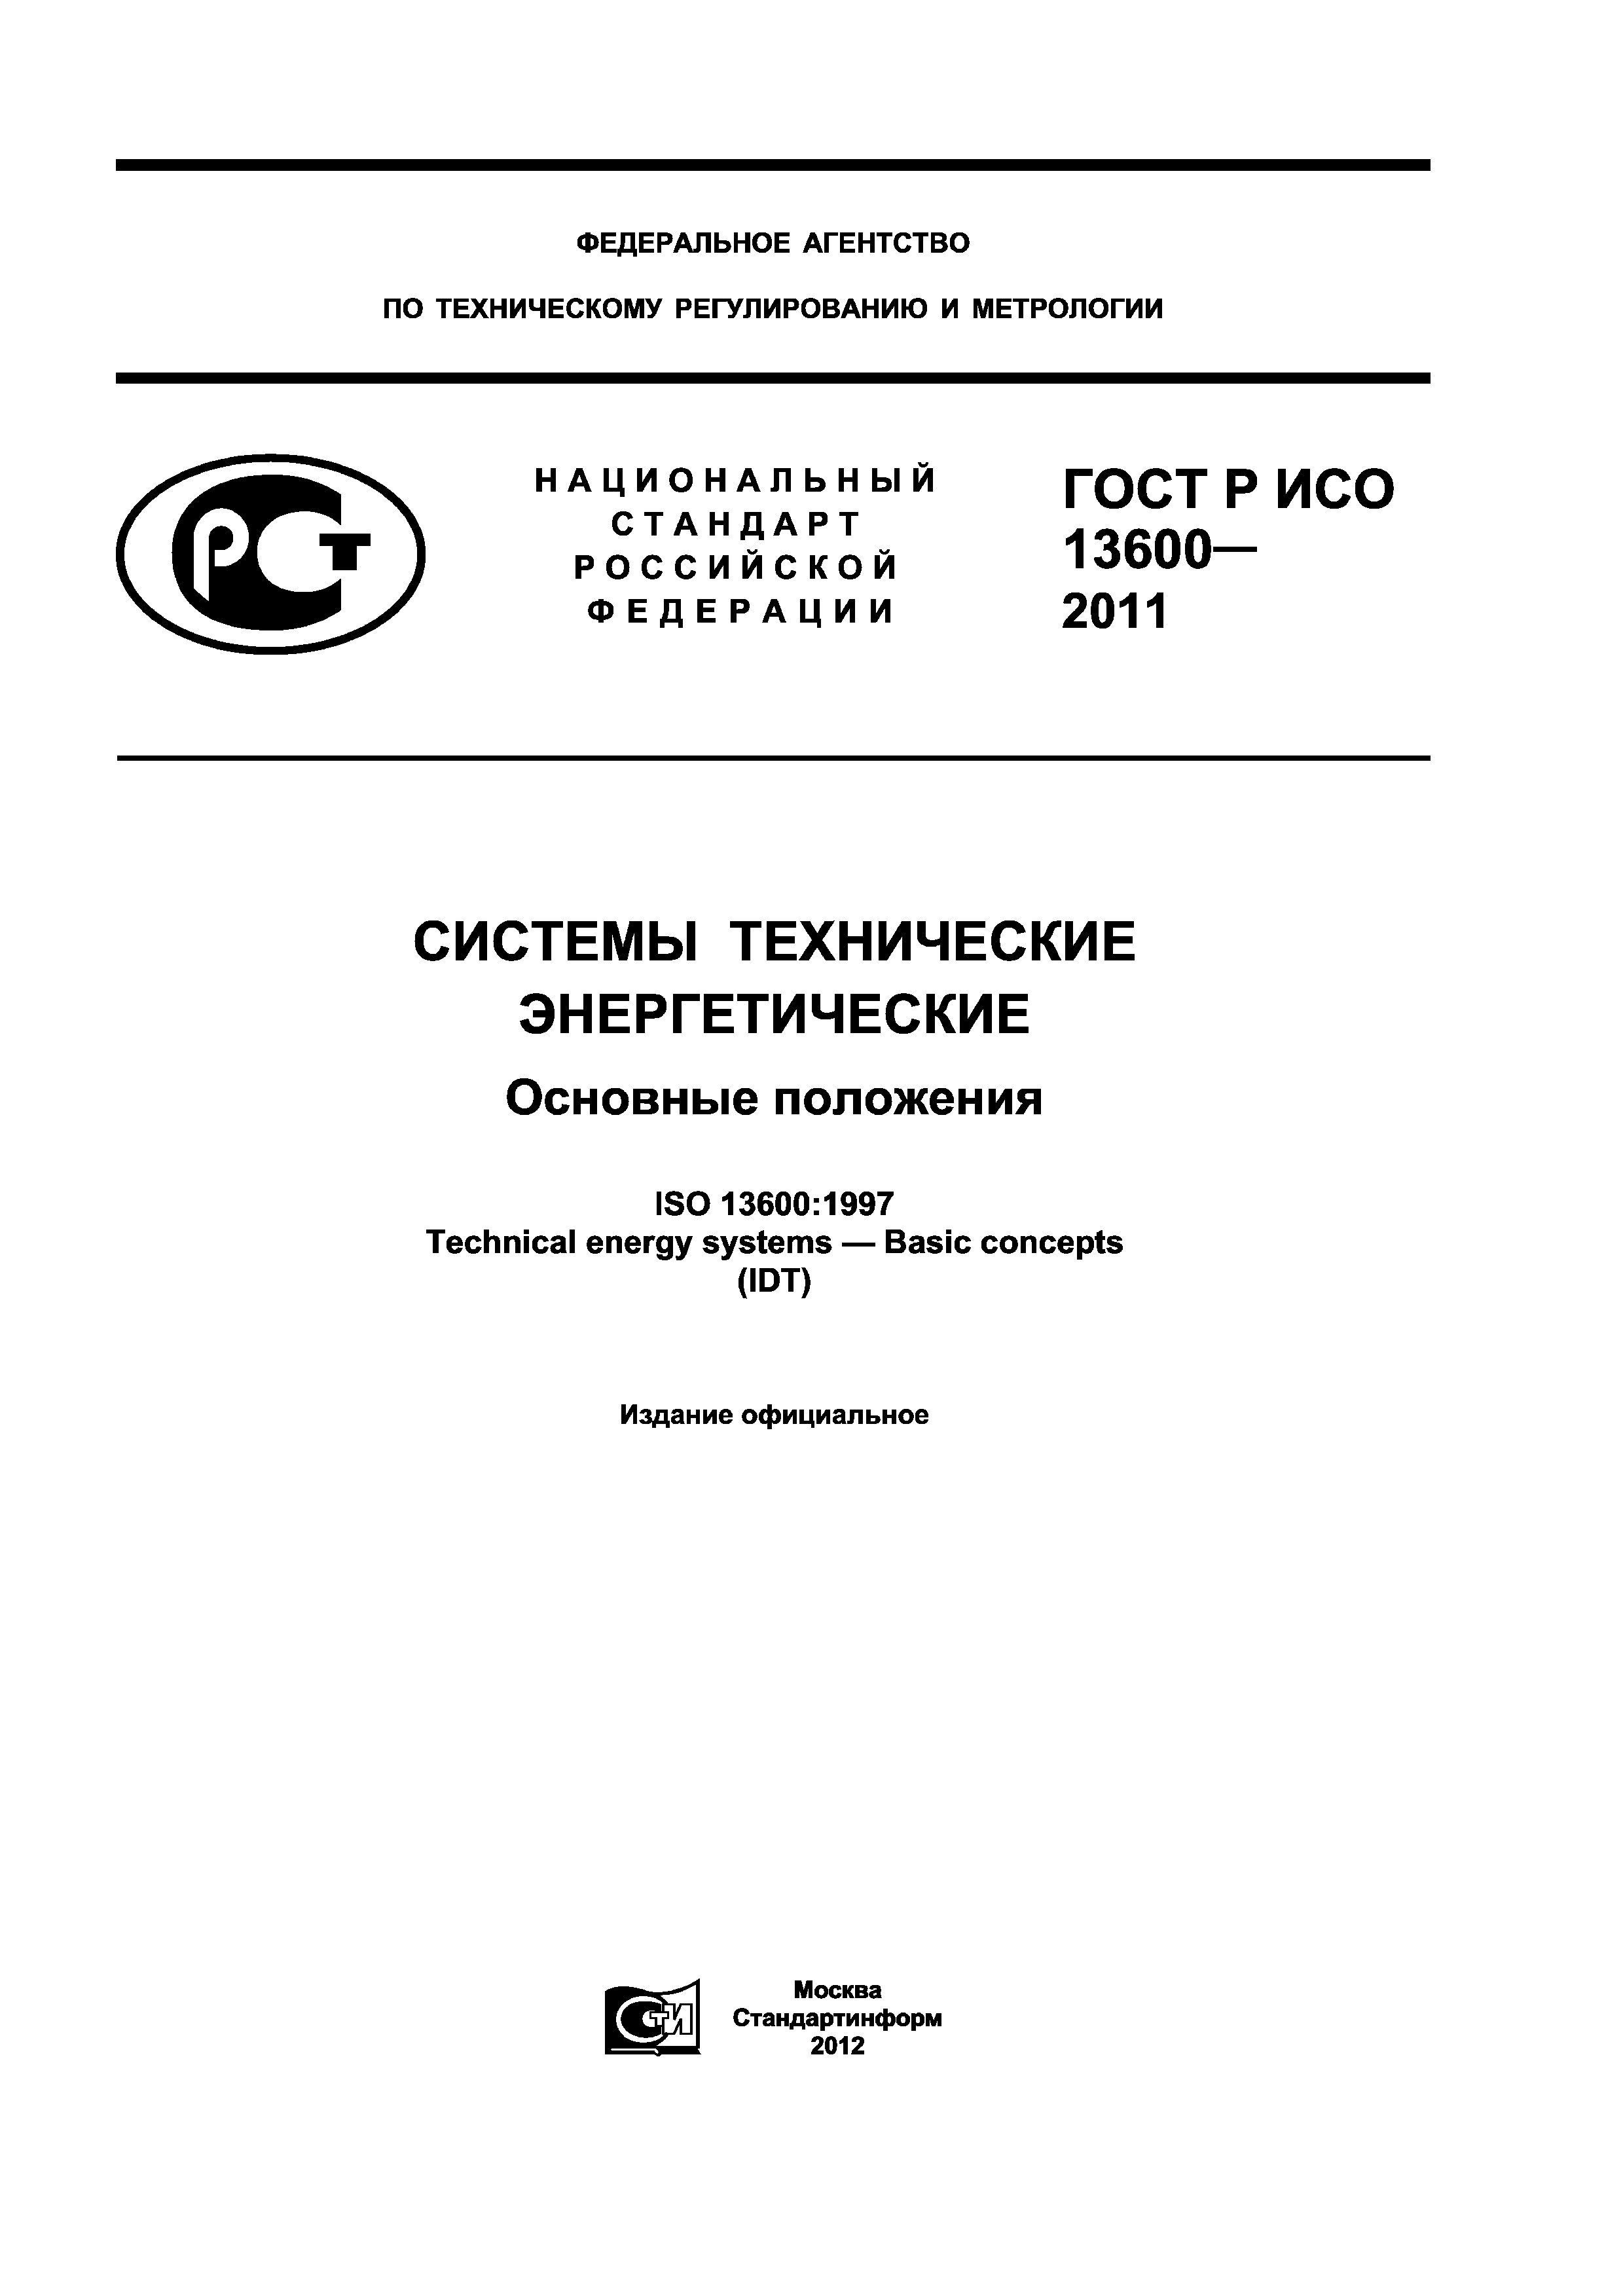 ГОСТ Р ИСО 13600-2011